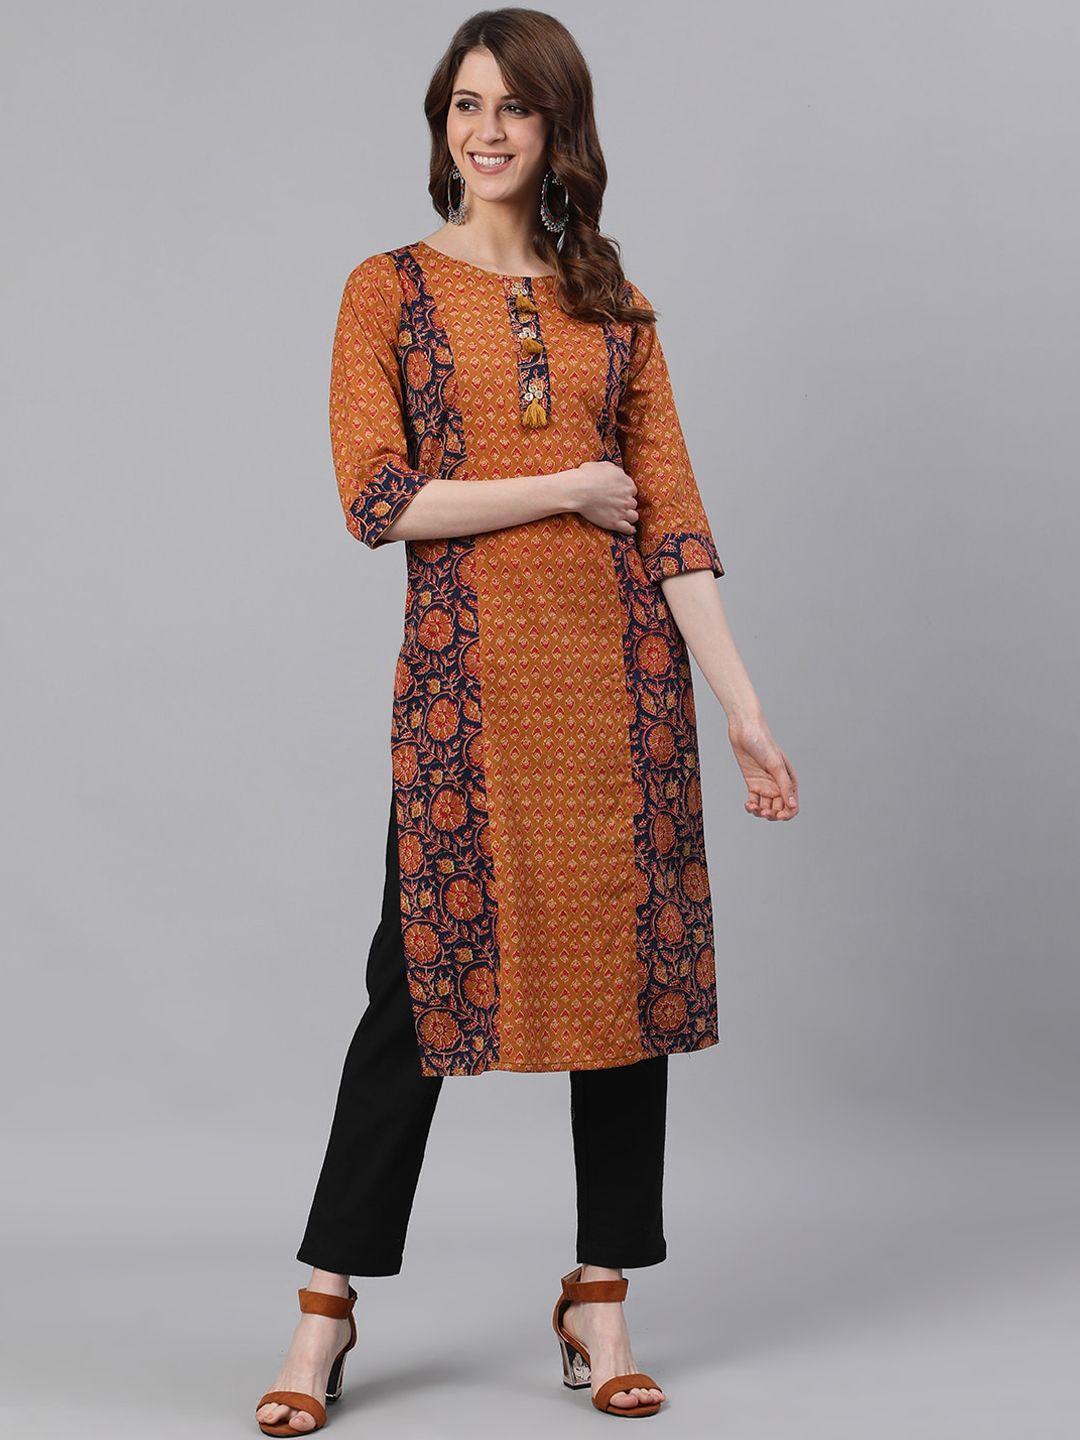 jaipur-kurti-women-mustard-brown-&-black-ethnic-motifs-printed-kurta